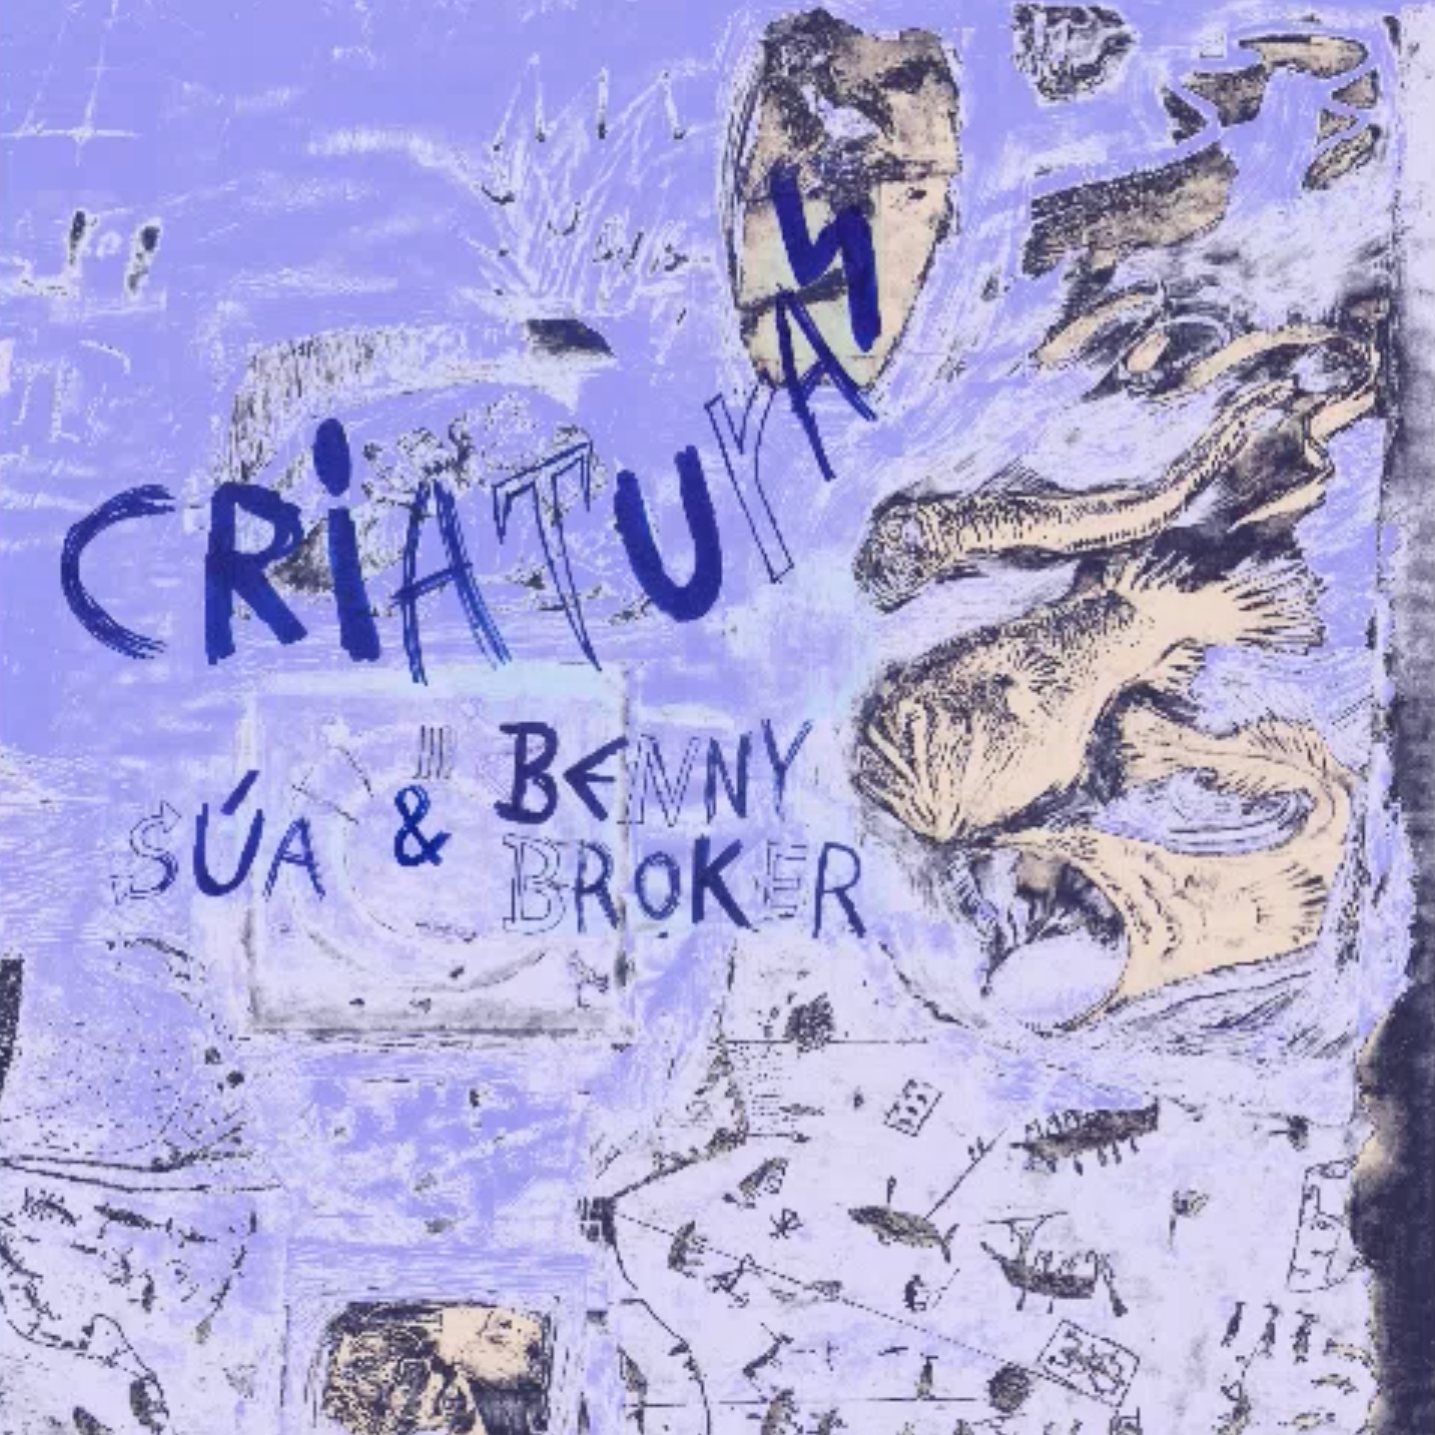 9 - SÚA &amp; Benny Broker - ep Criaturas